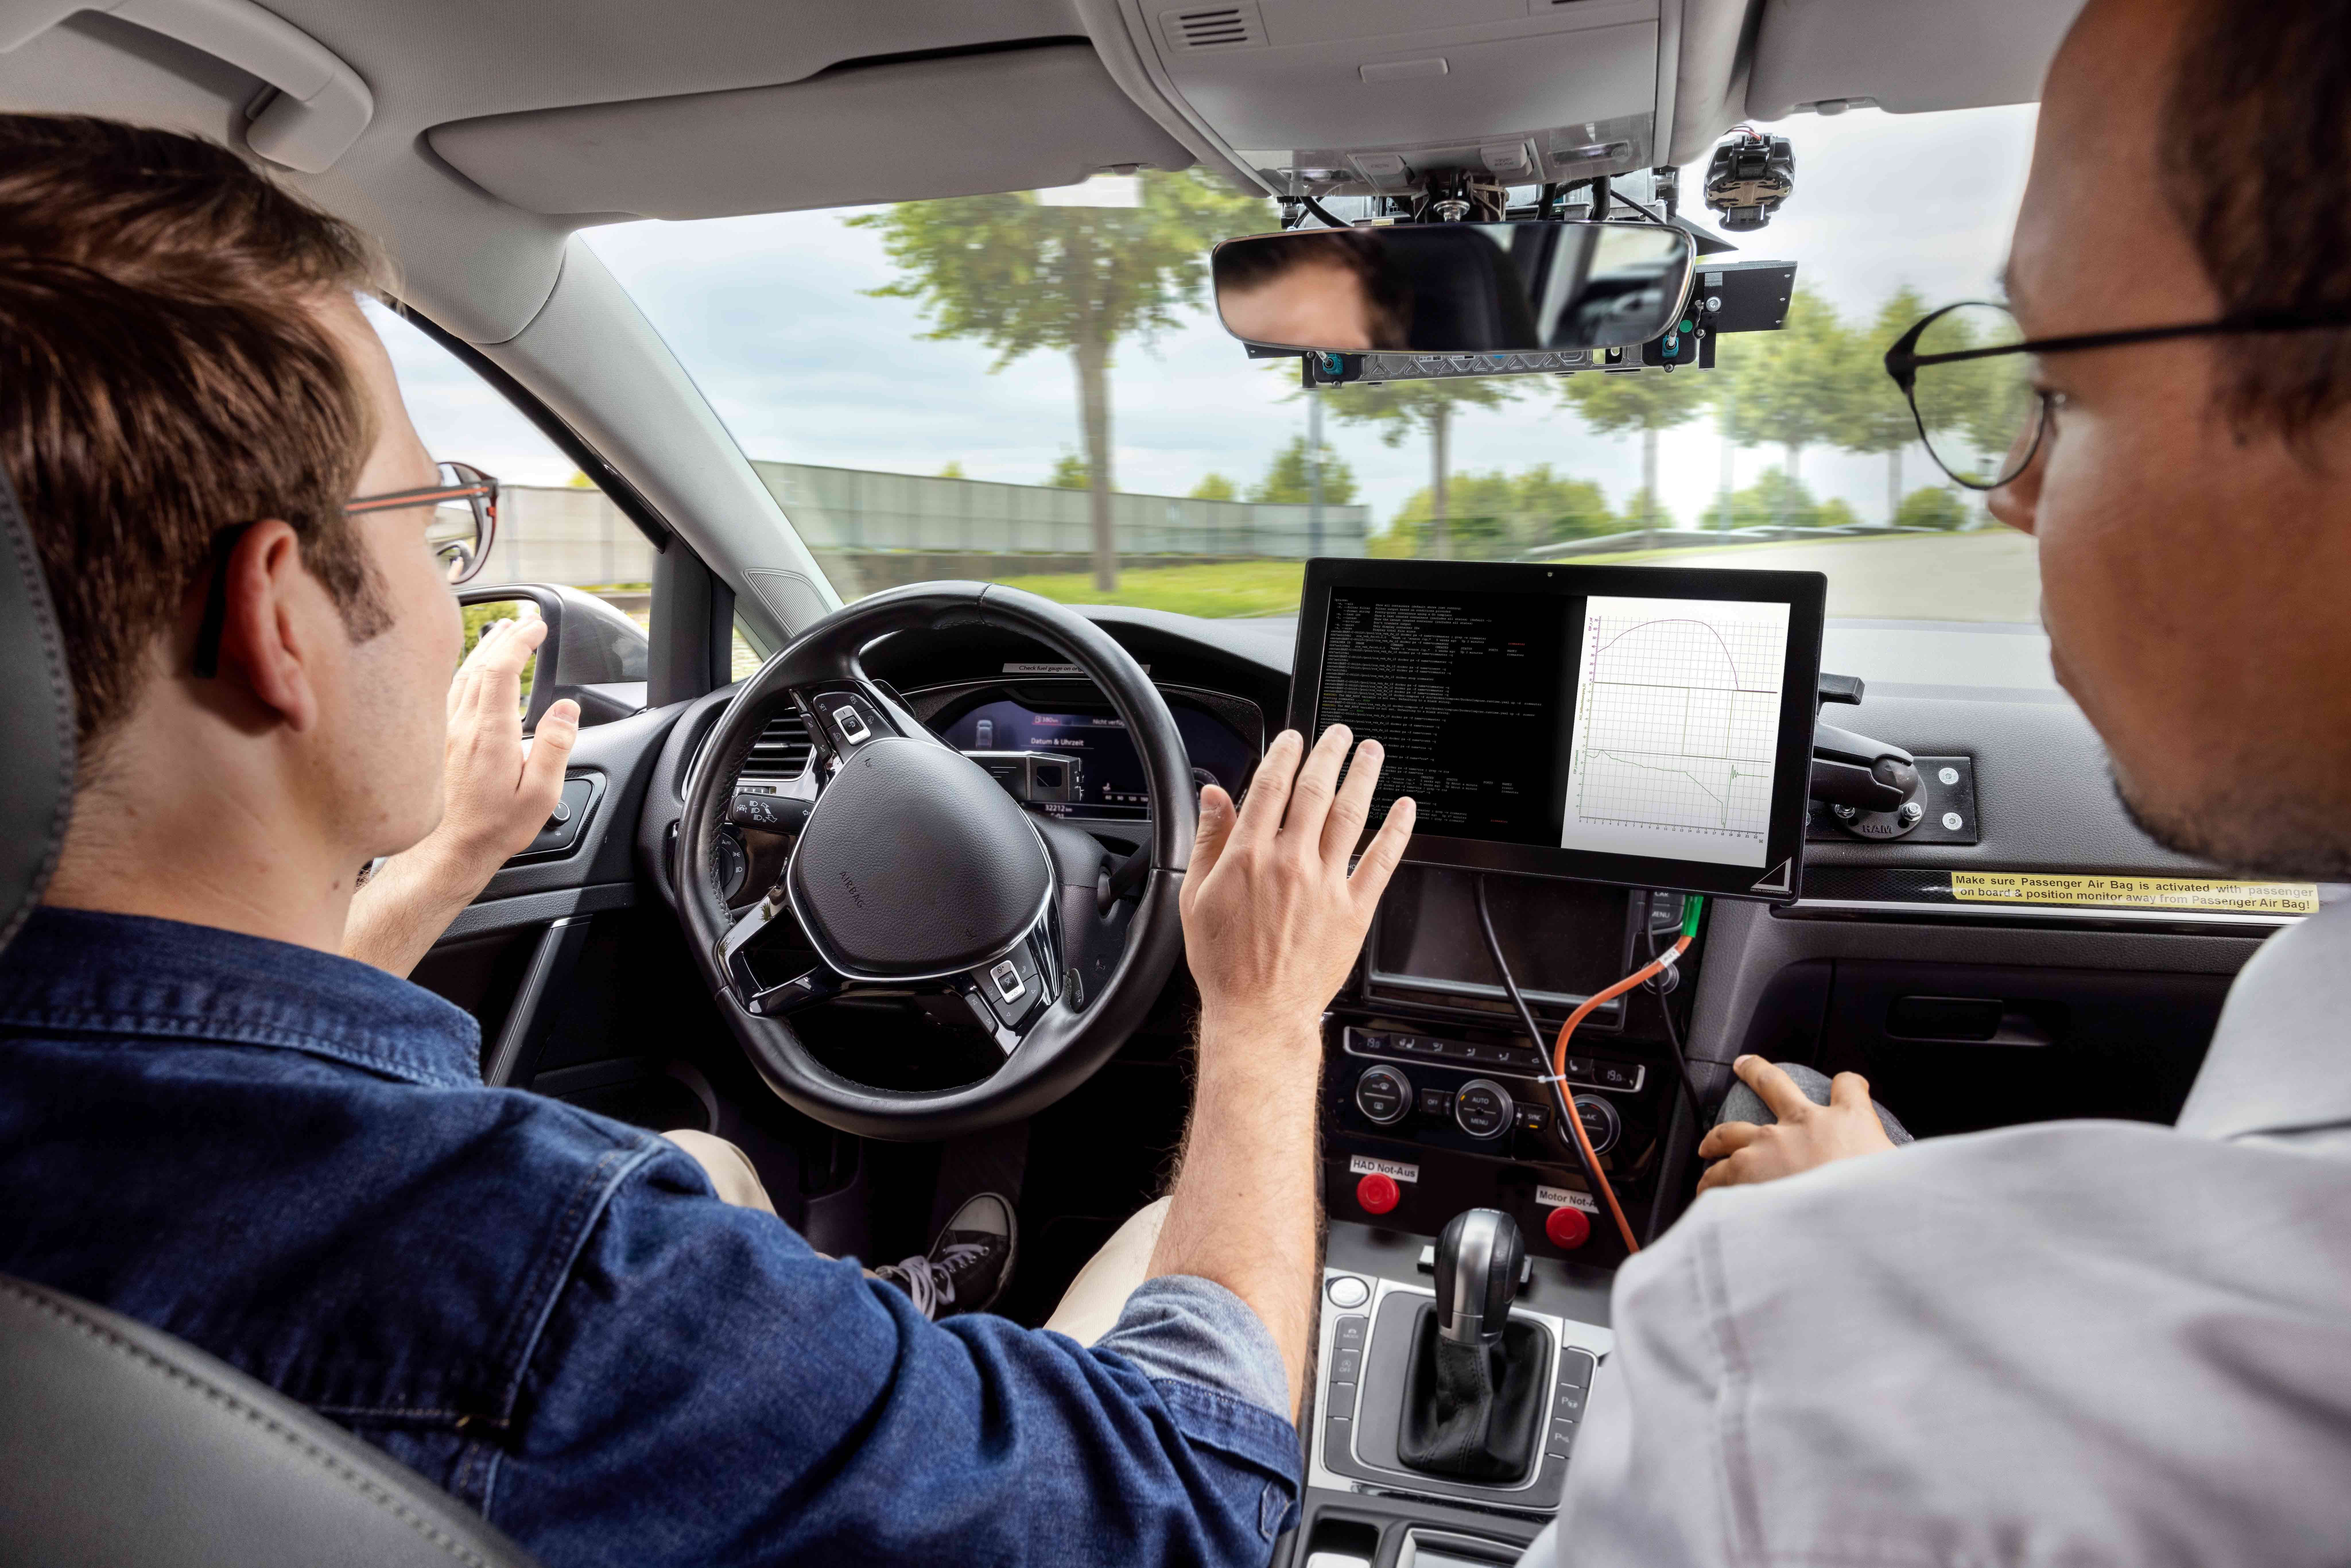 Ricarica più veloce, sensori, sicurezza: Bosch guida avanti